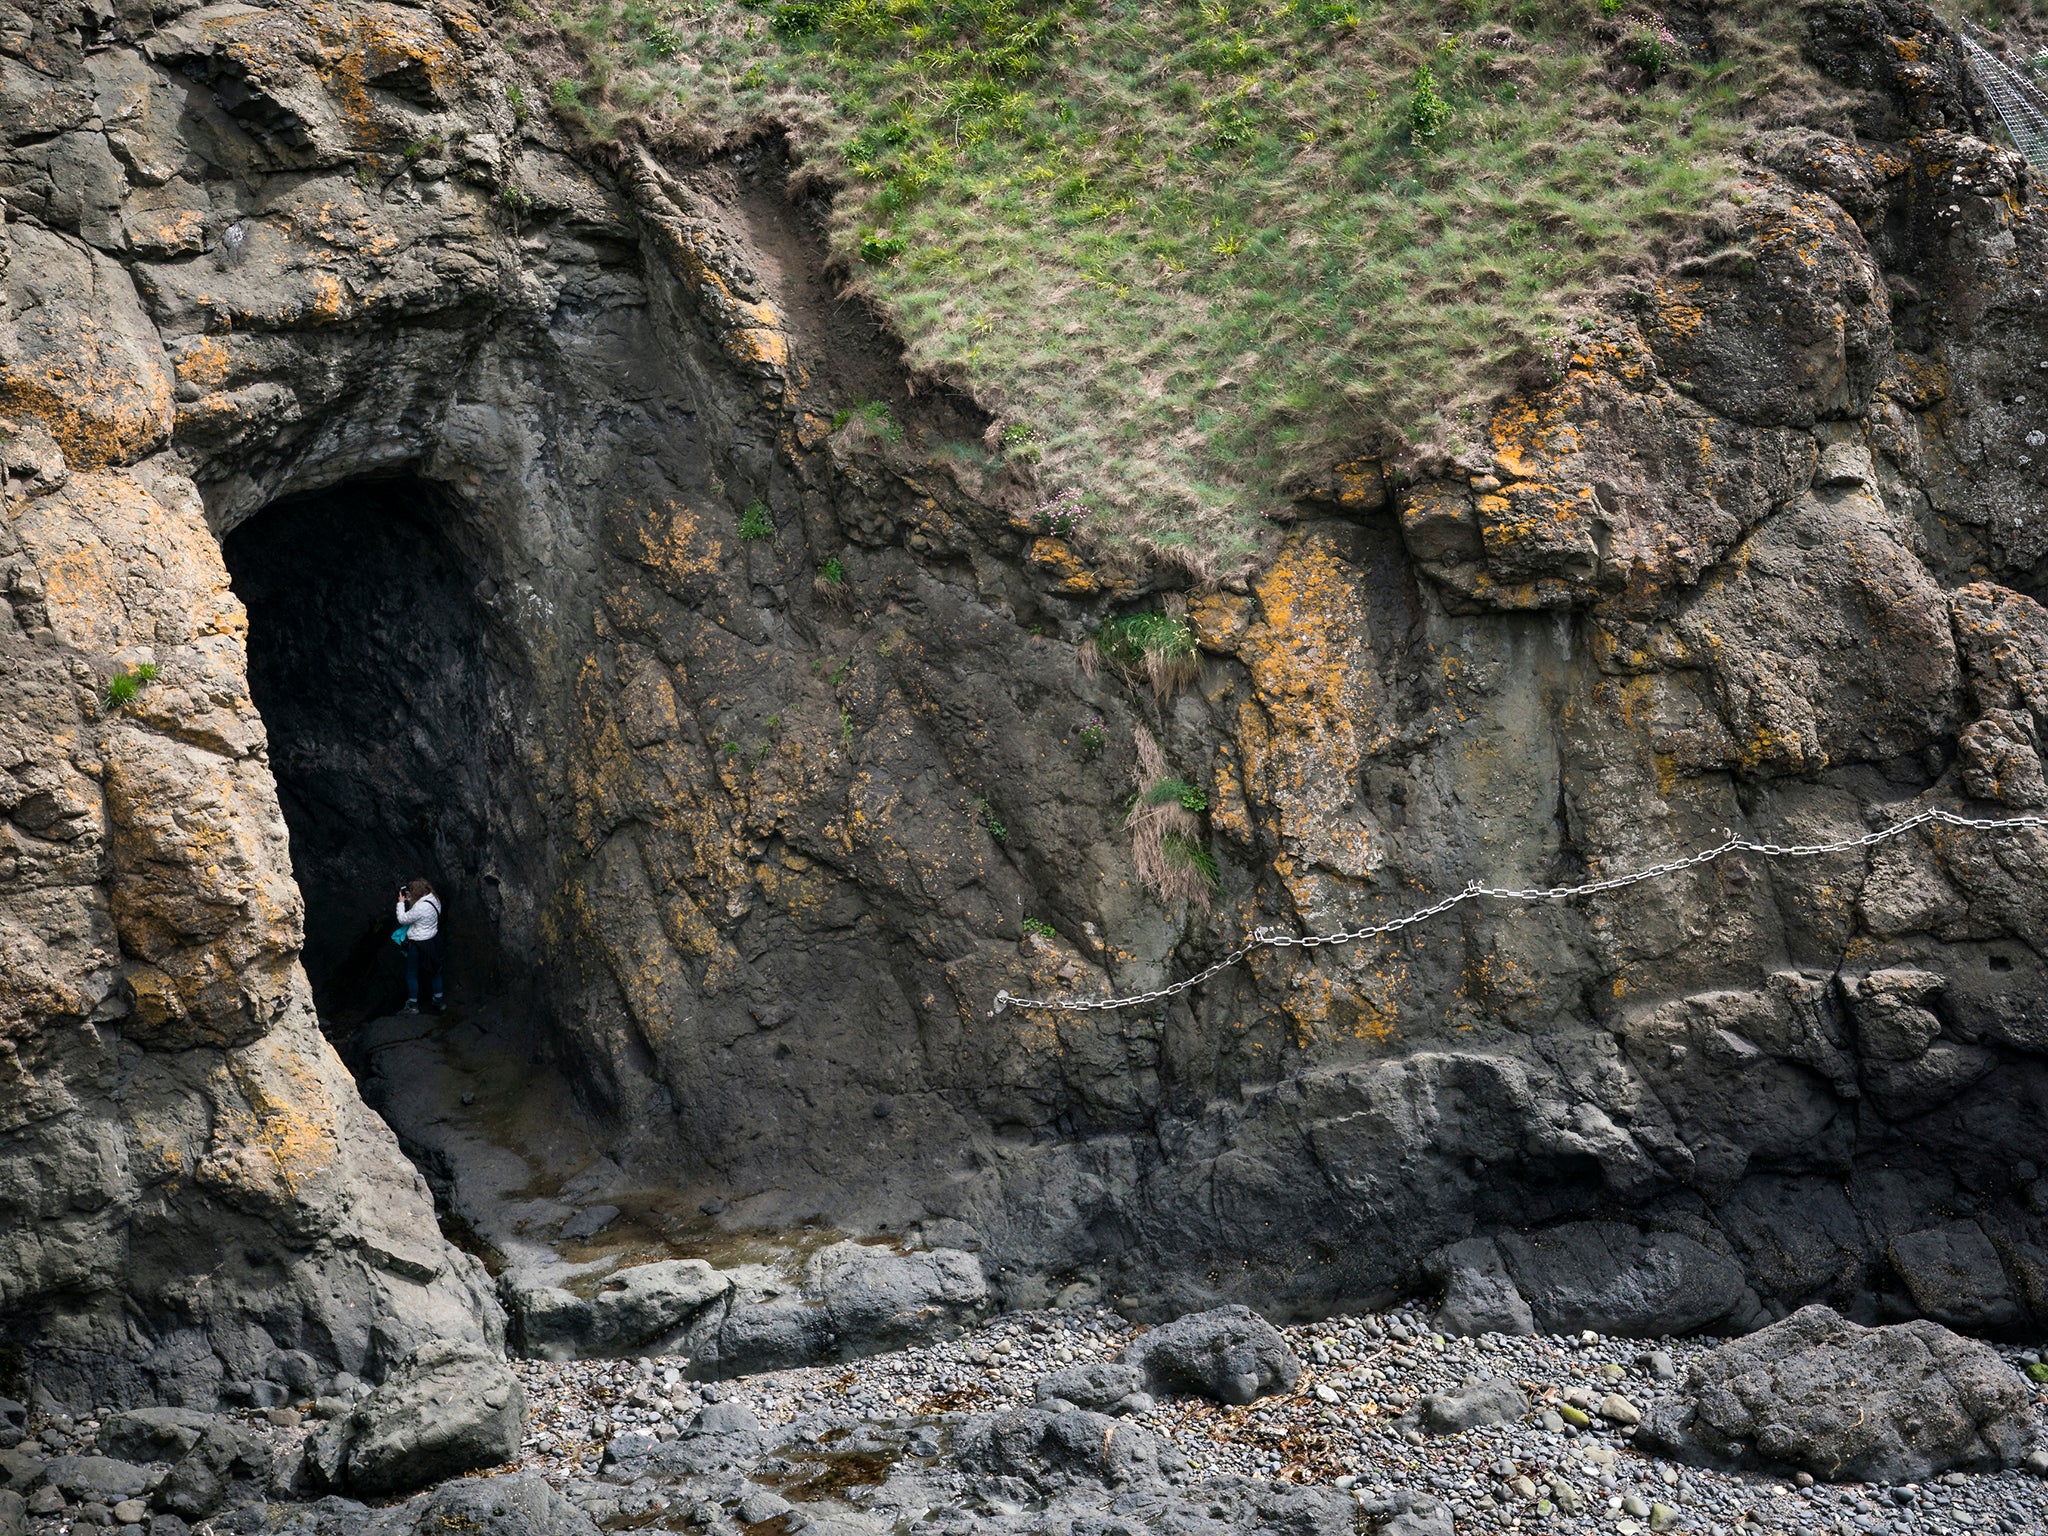 A cave near Kincraig Point on the Elie Chain Walk along the Fife Coastal Path (iStock)